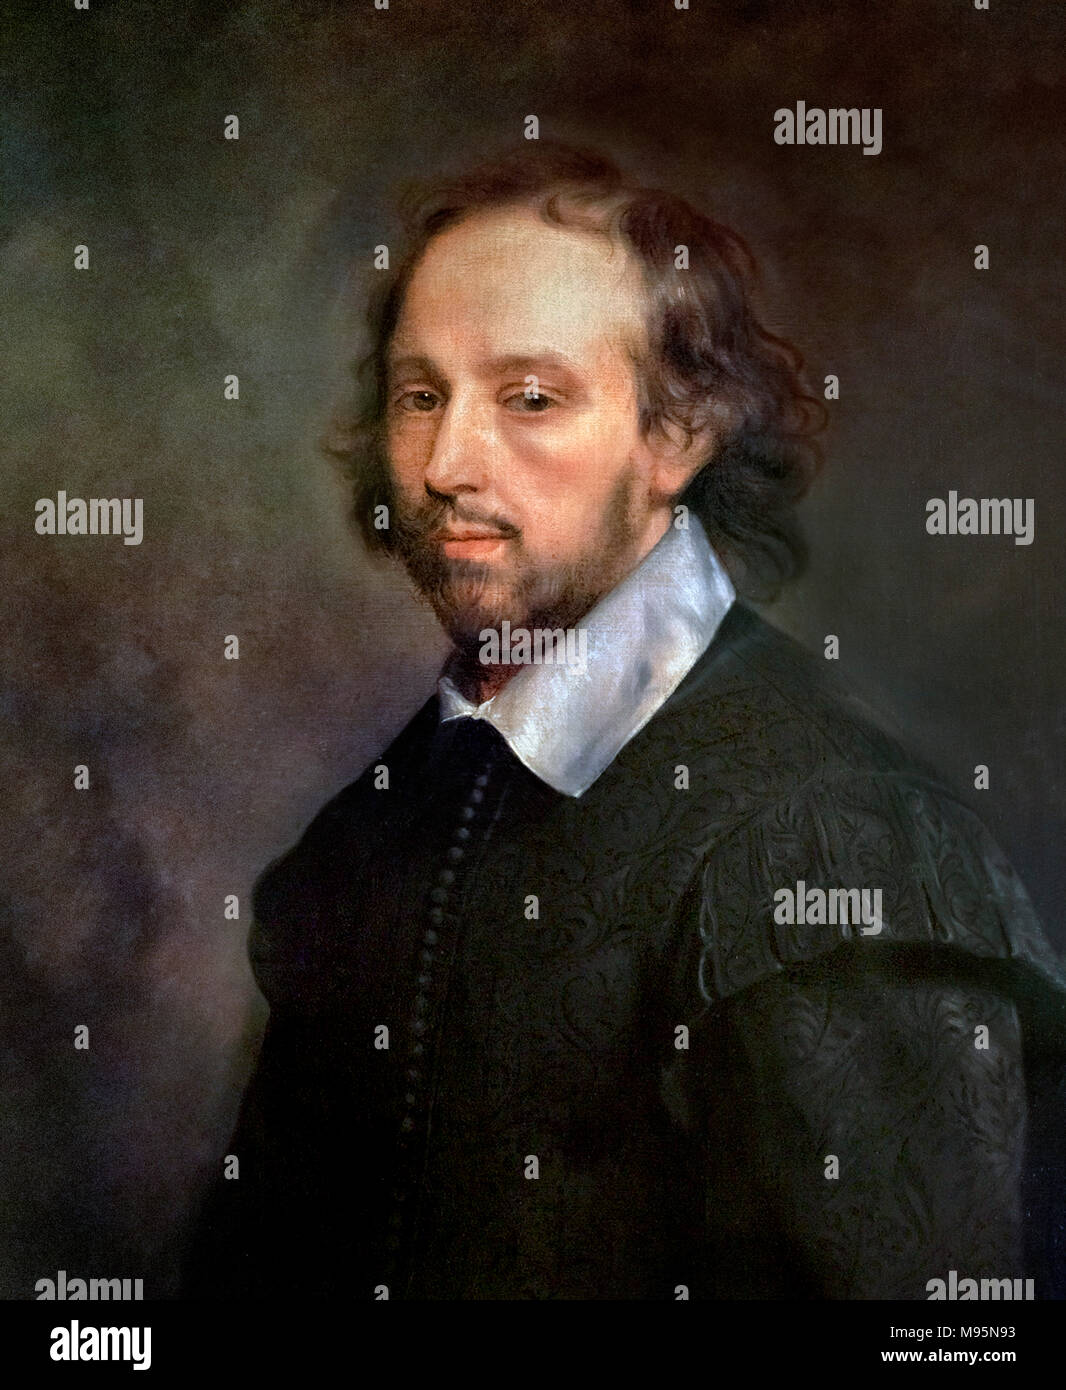 William Shakespeare. Portrait von Shakespeare von Gerard Soest, Reproduktion eines C. 1667 Malerei. Stockfoto